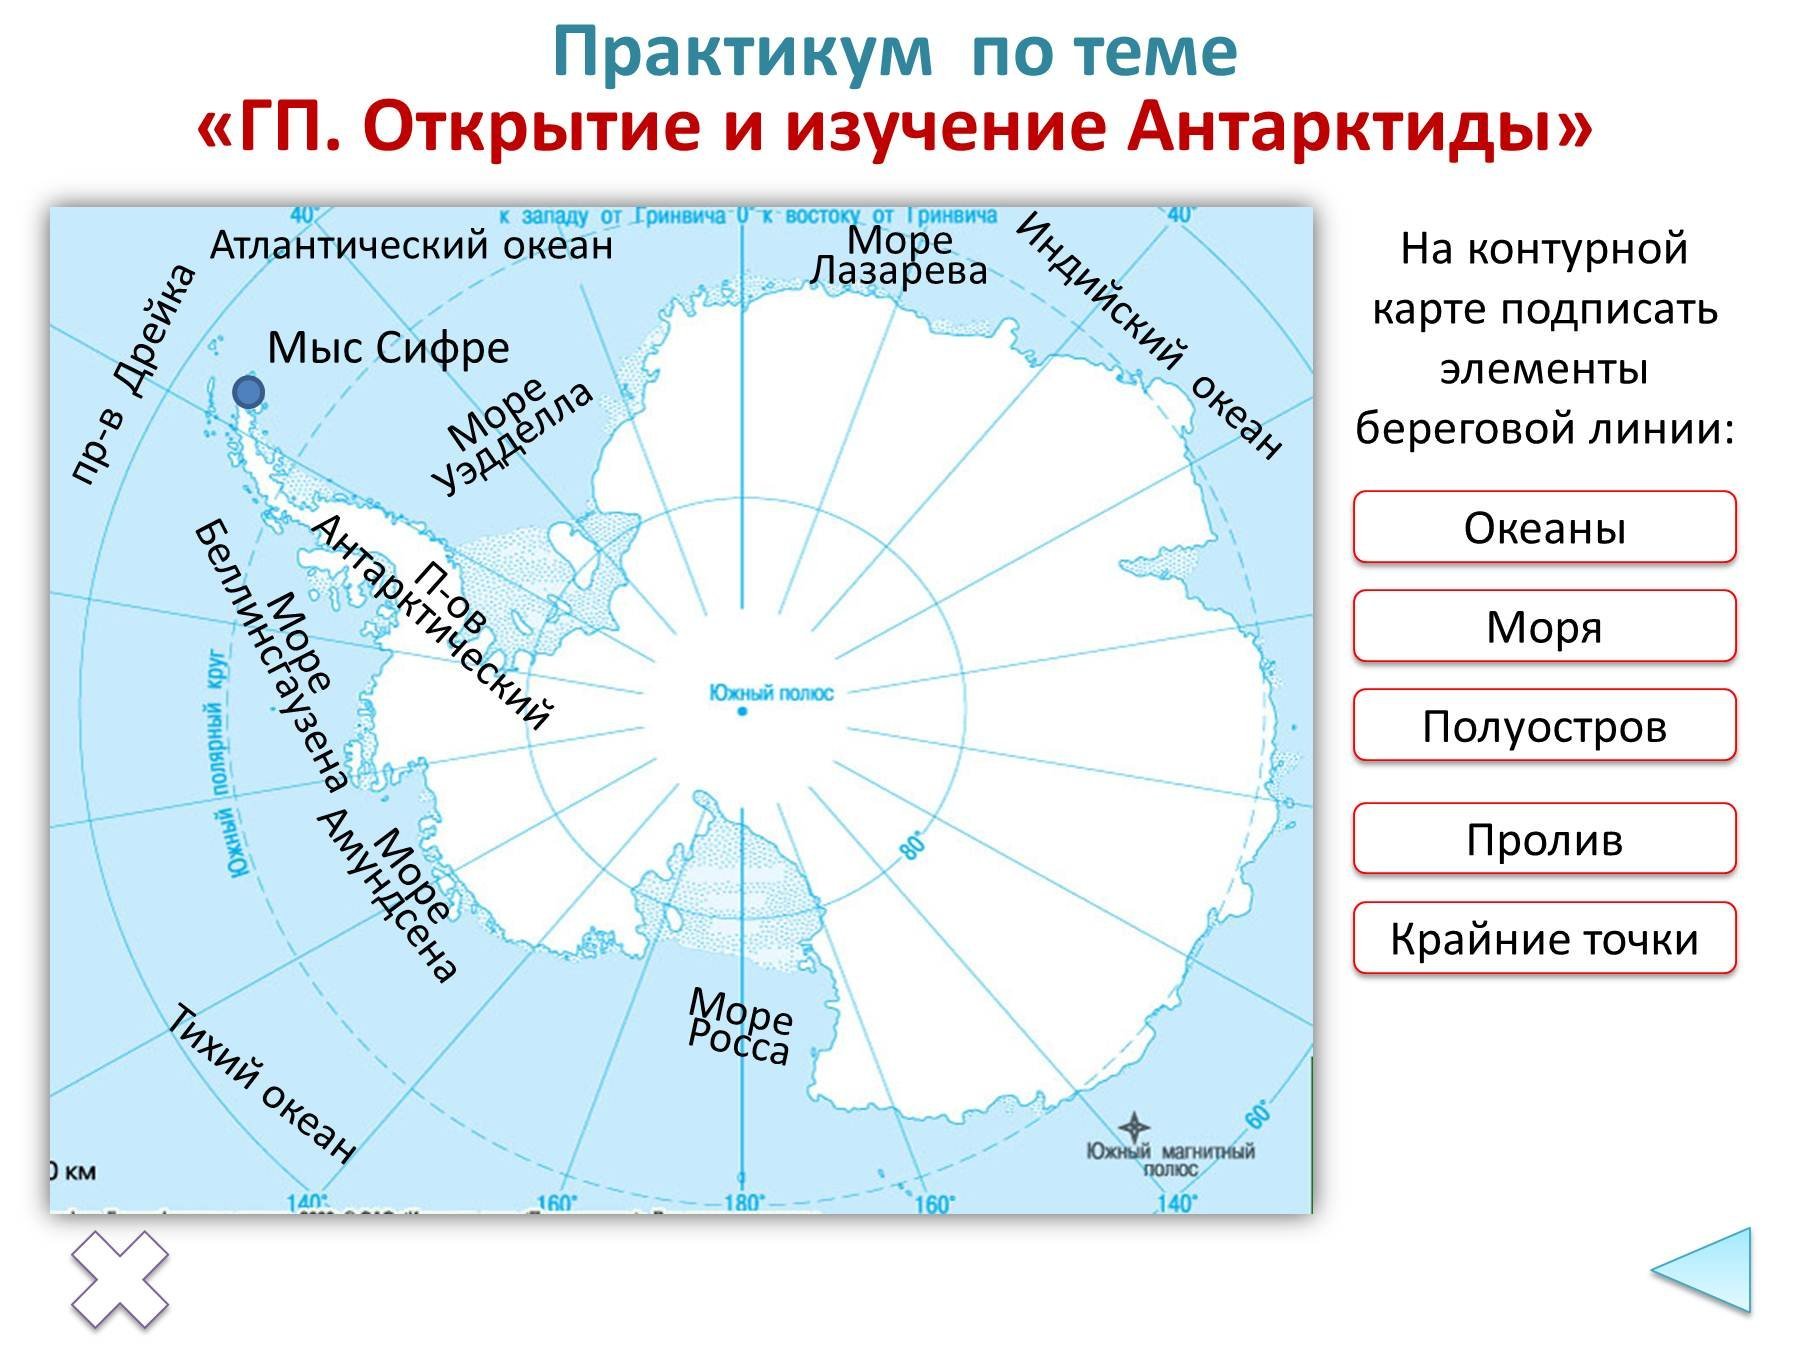 Материк расположенный в южном океане. Моря: Амундсена, Беллинсгаузена, Росса, Уэдделла.. Мыс Сифре на карте Антарктиды. Береговая линия Антарктиды на контурной карте. Открытие моря Уэдделла.